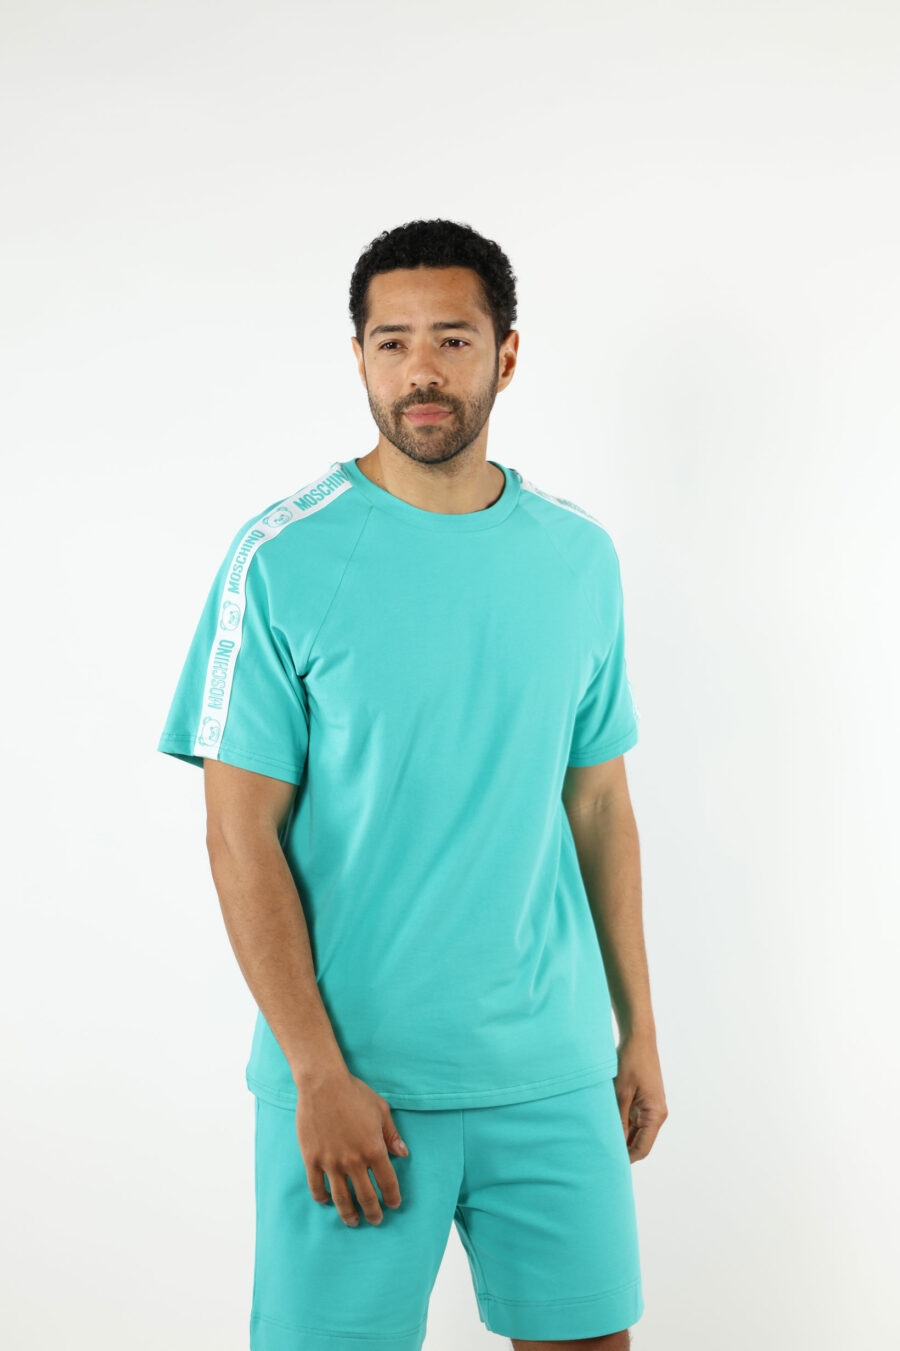 Camiseta azul aguamarina con logo oso "underbear" en cinta hombros - 111006